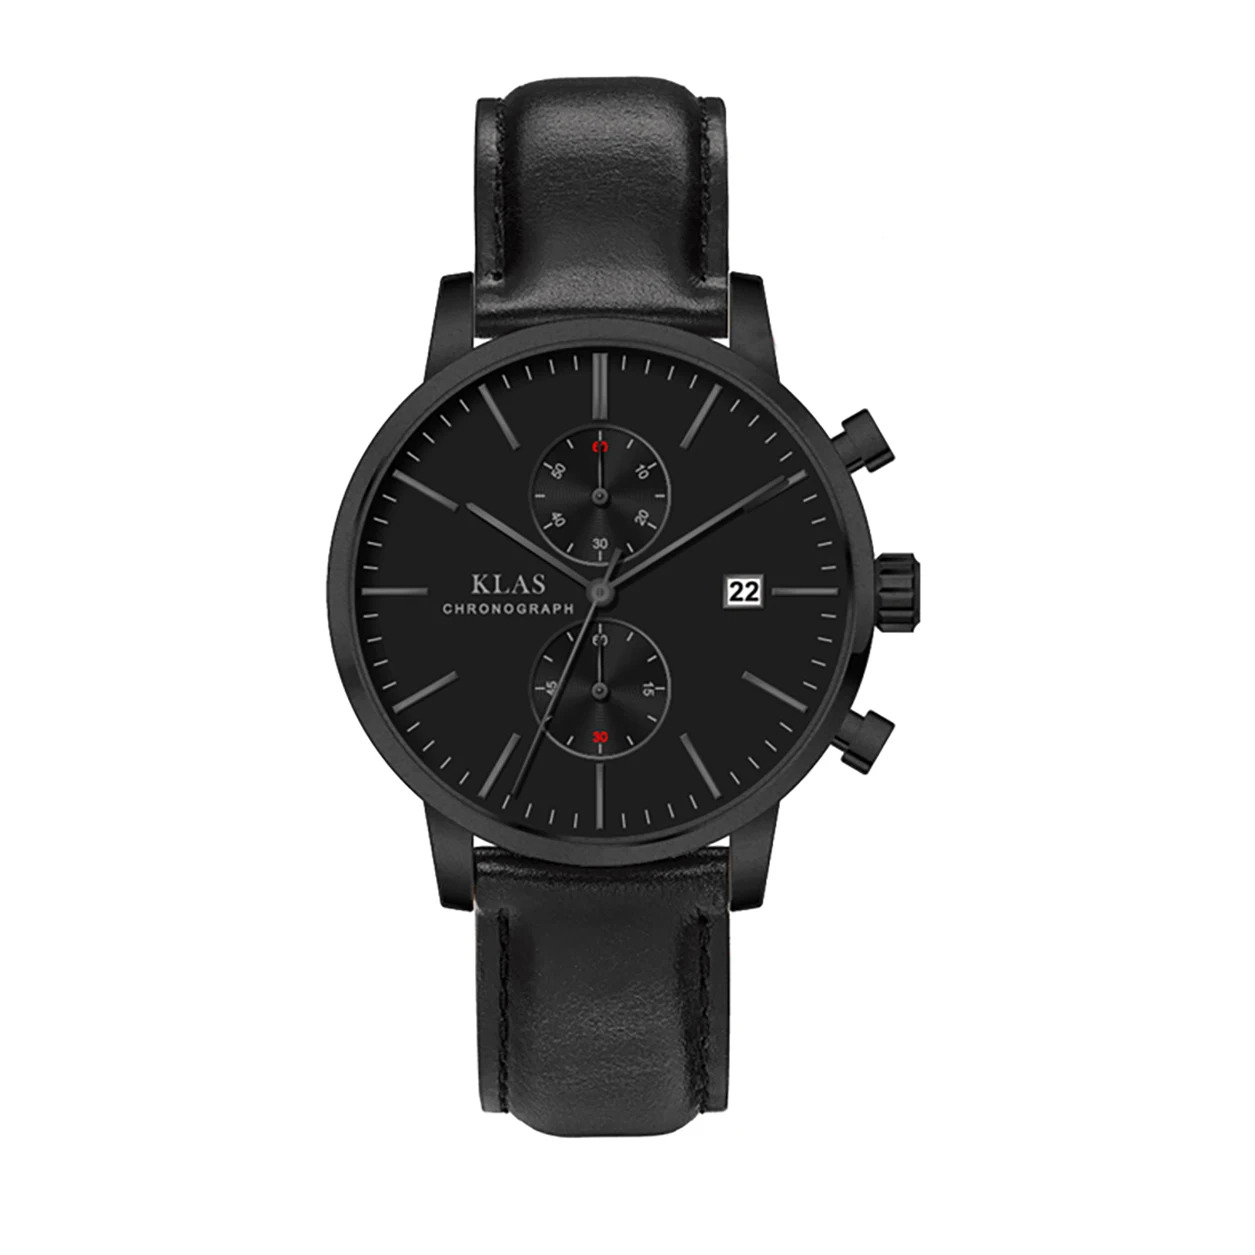 Quartz watch men's luxury brand watch men's watch 50 meters waterproof KLAS Brand